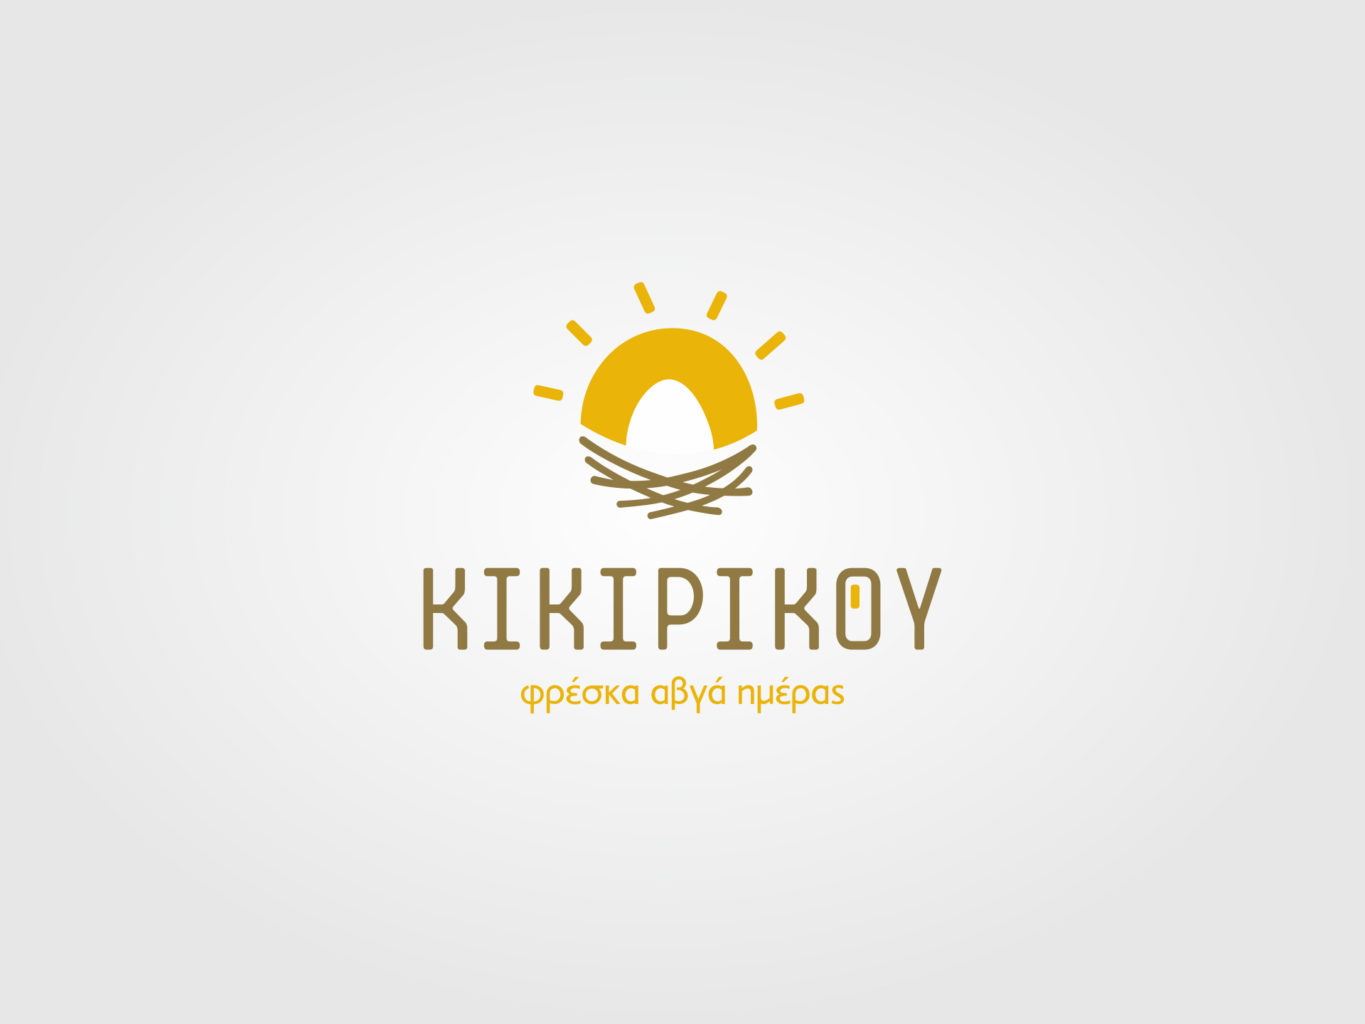 kikirikou fresh eggs logo by fiftyeggz